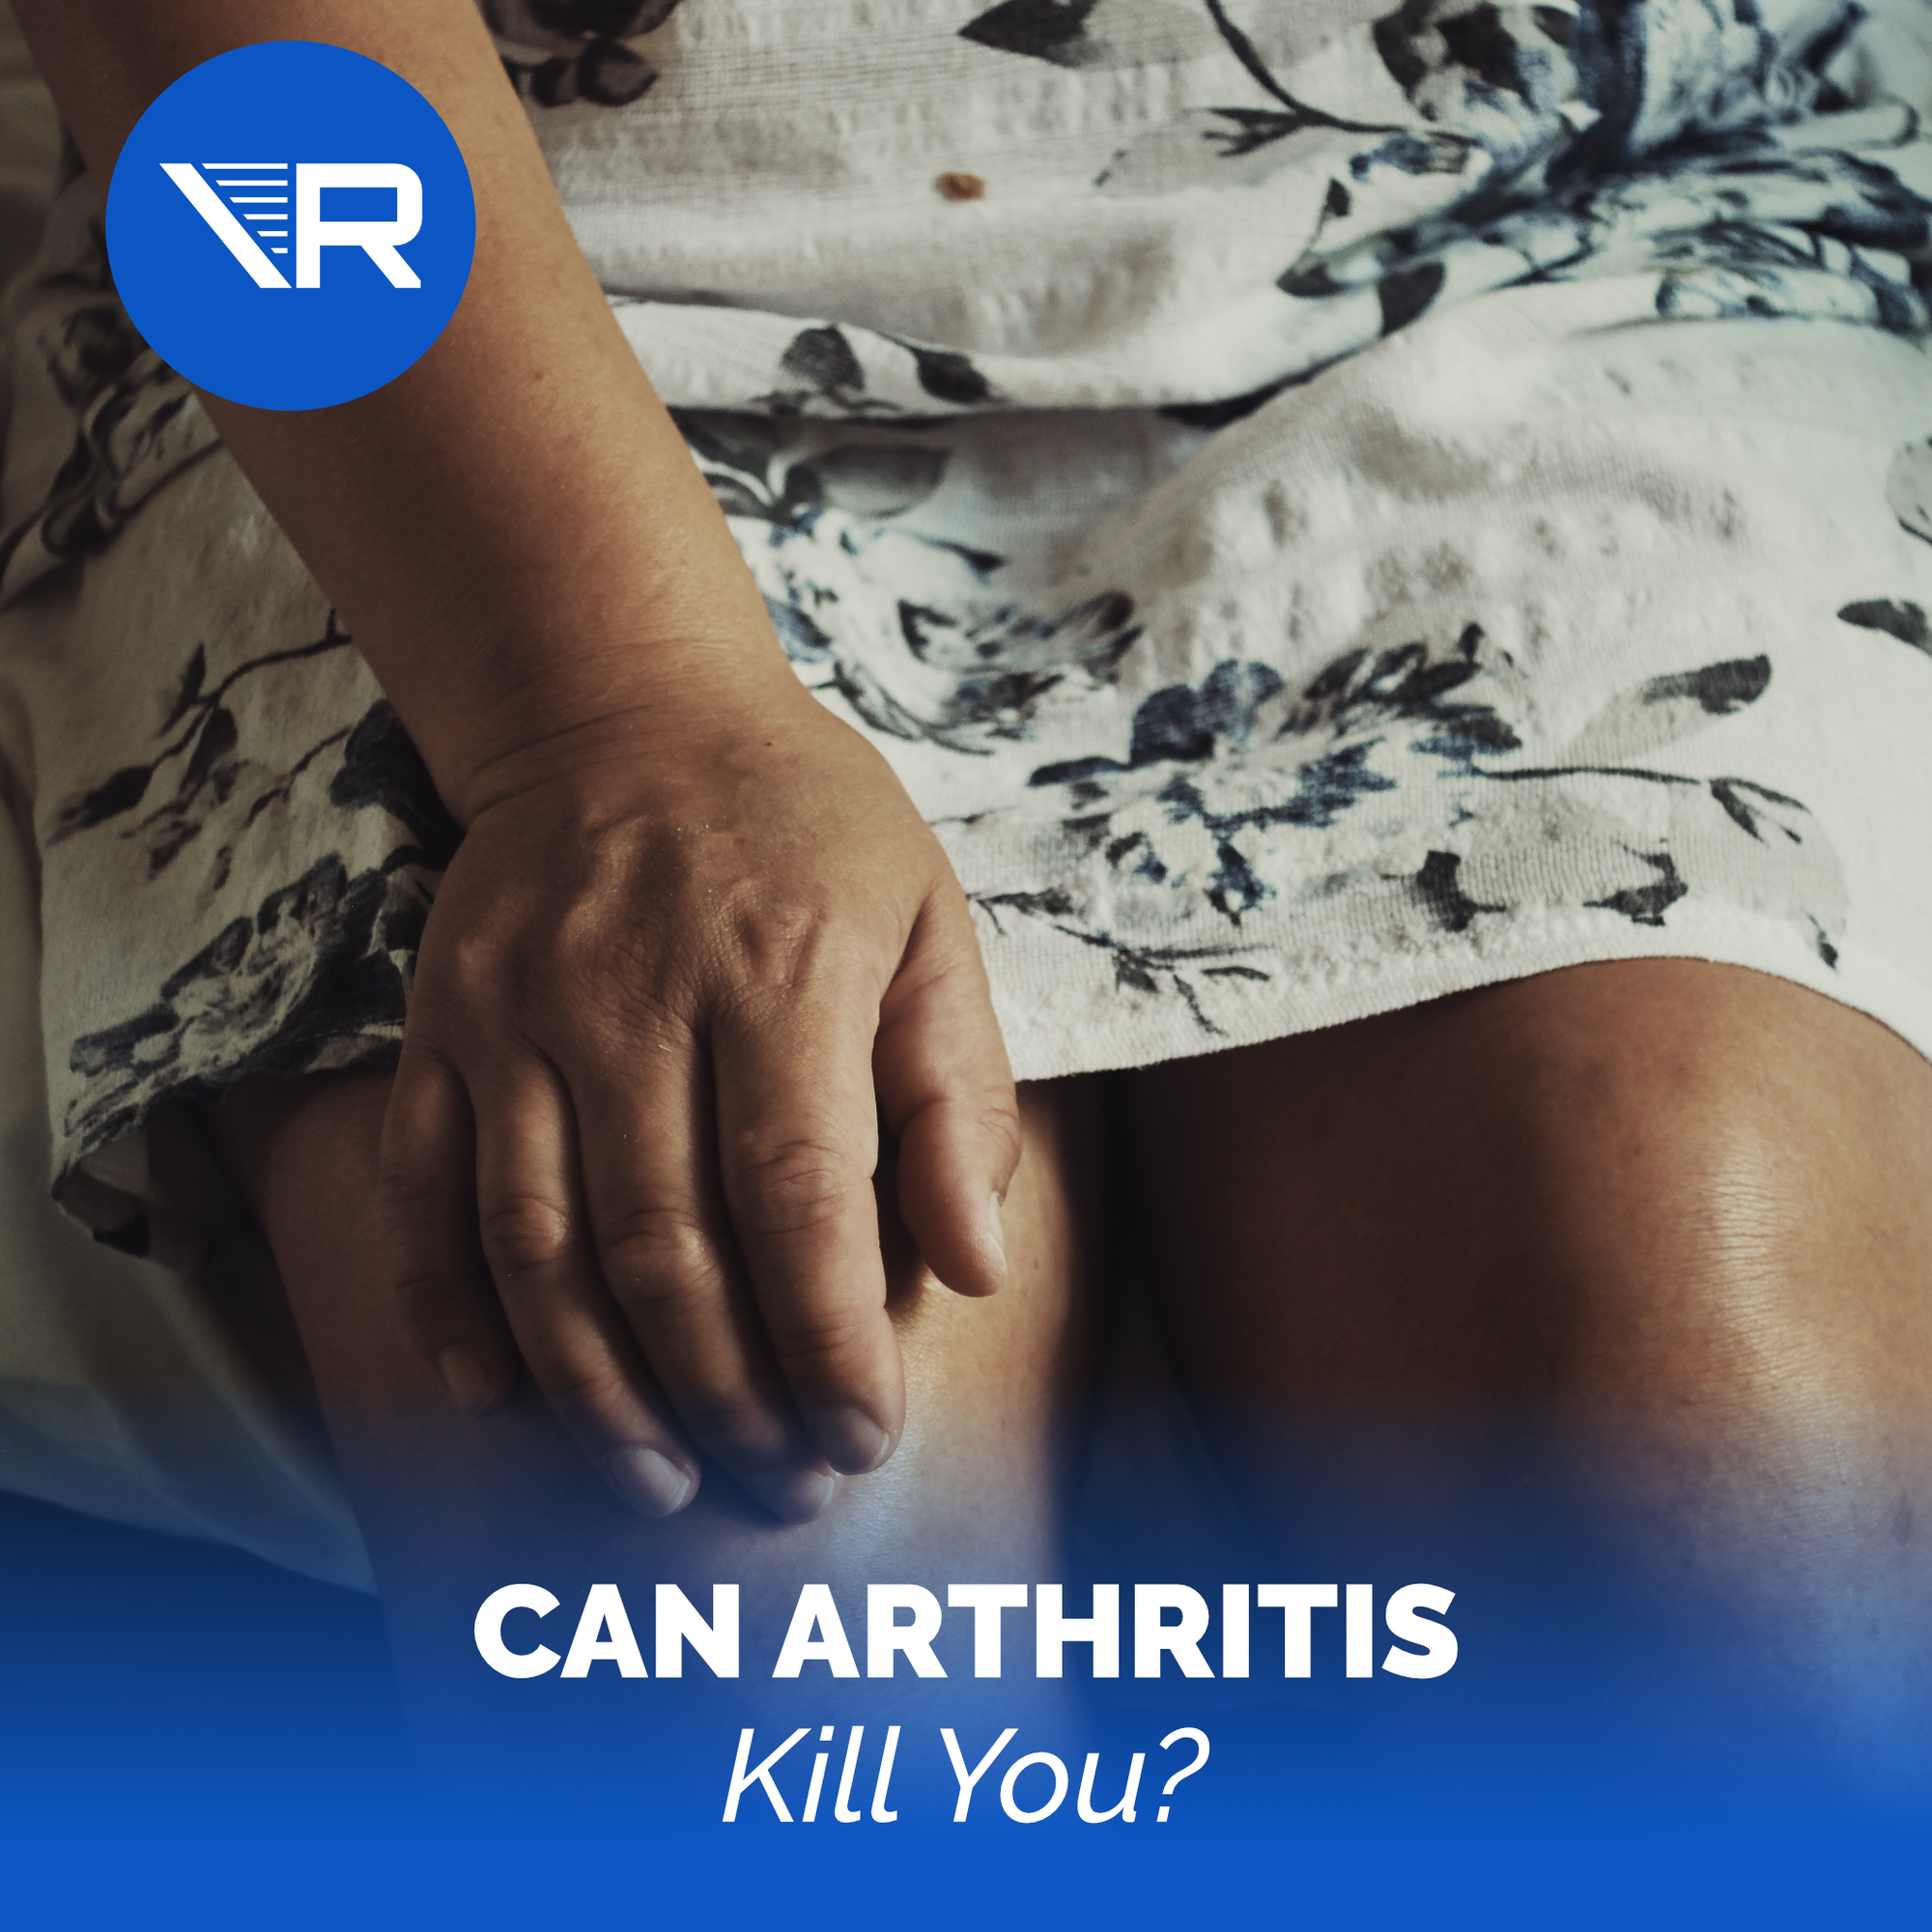 Can arthritis kill you?